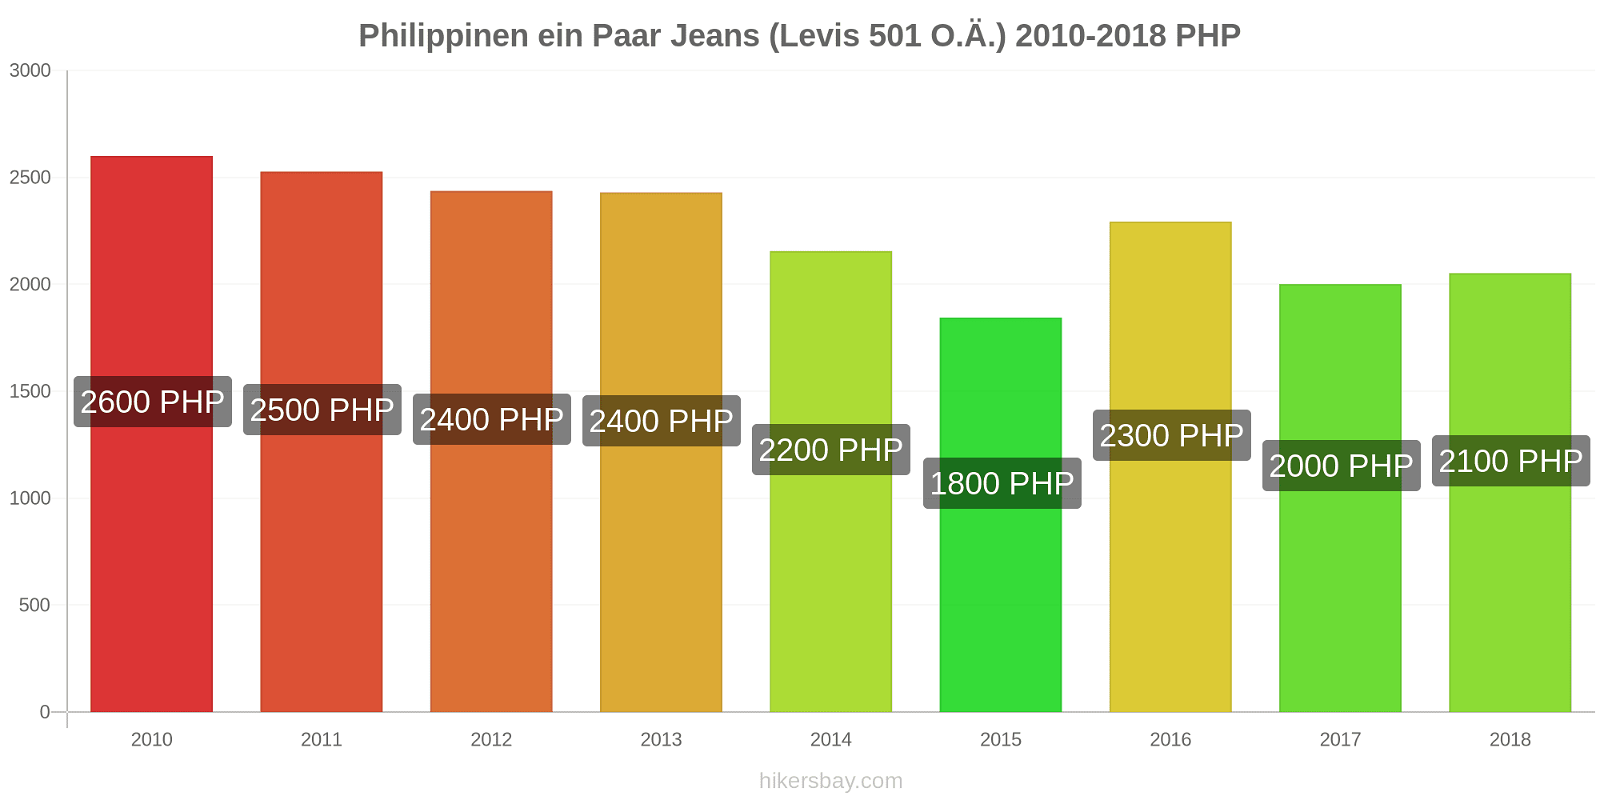 Philippinen Preisänderungen 1 Paar Jeans (Levis 501 oder ähnlich) hikersbay.com